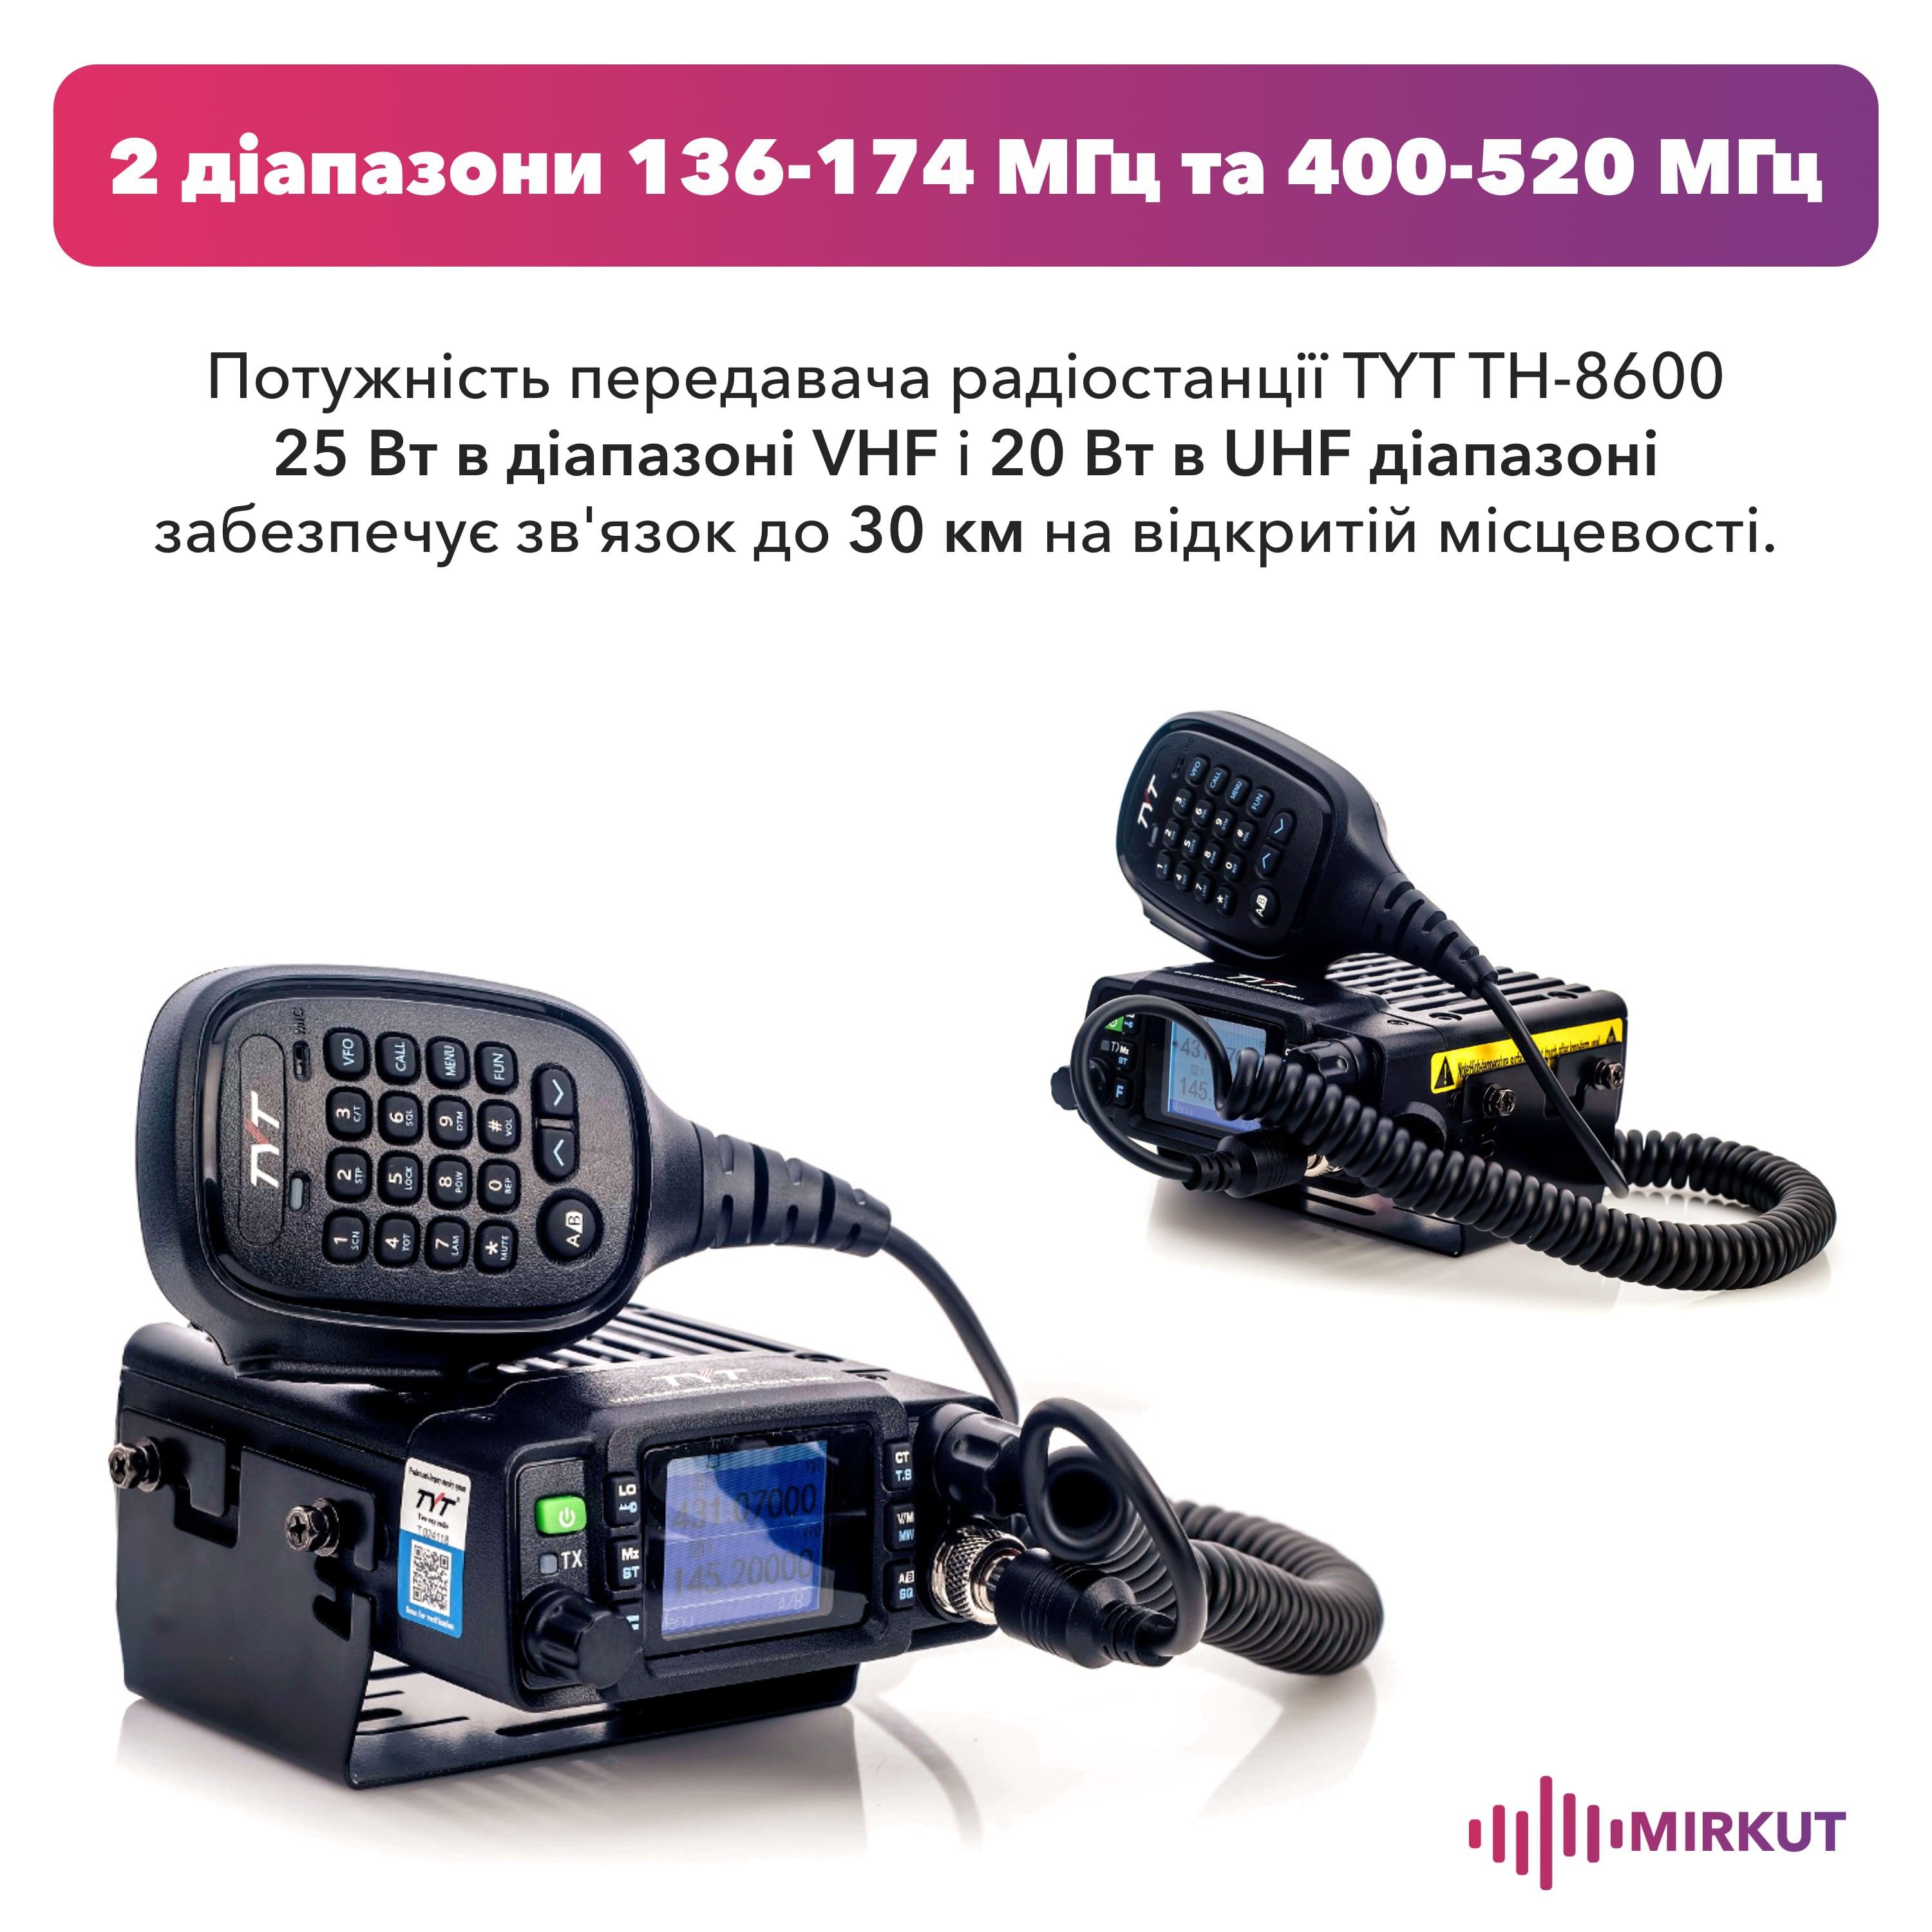 Автомобильная радиостанция TYT TH-8600 waterproof (8291) - фото 2